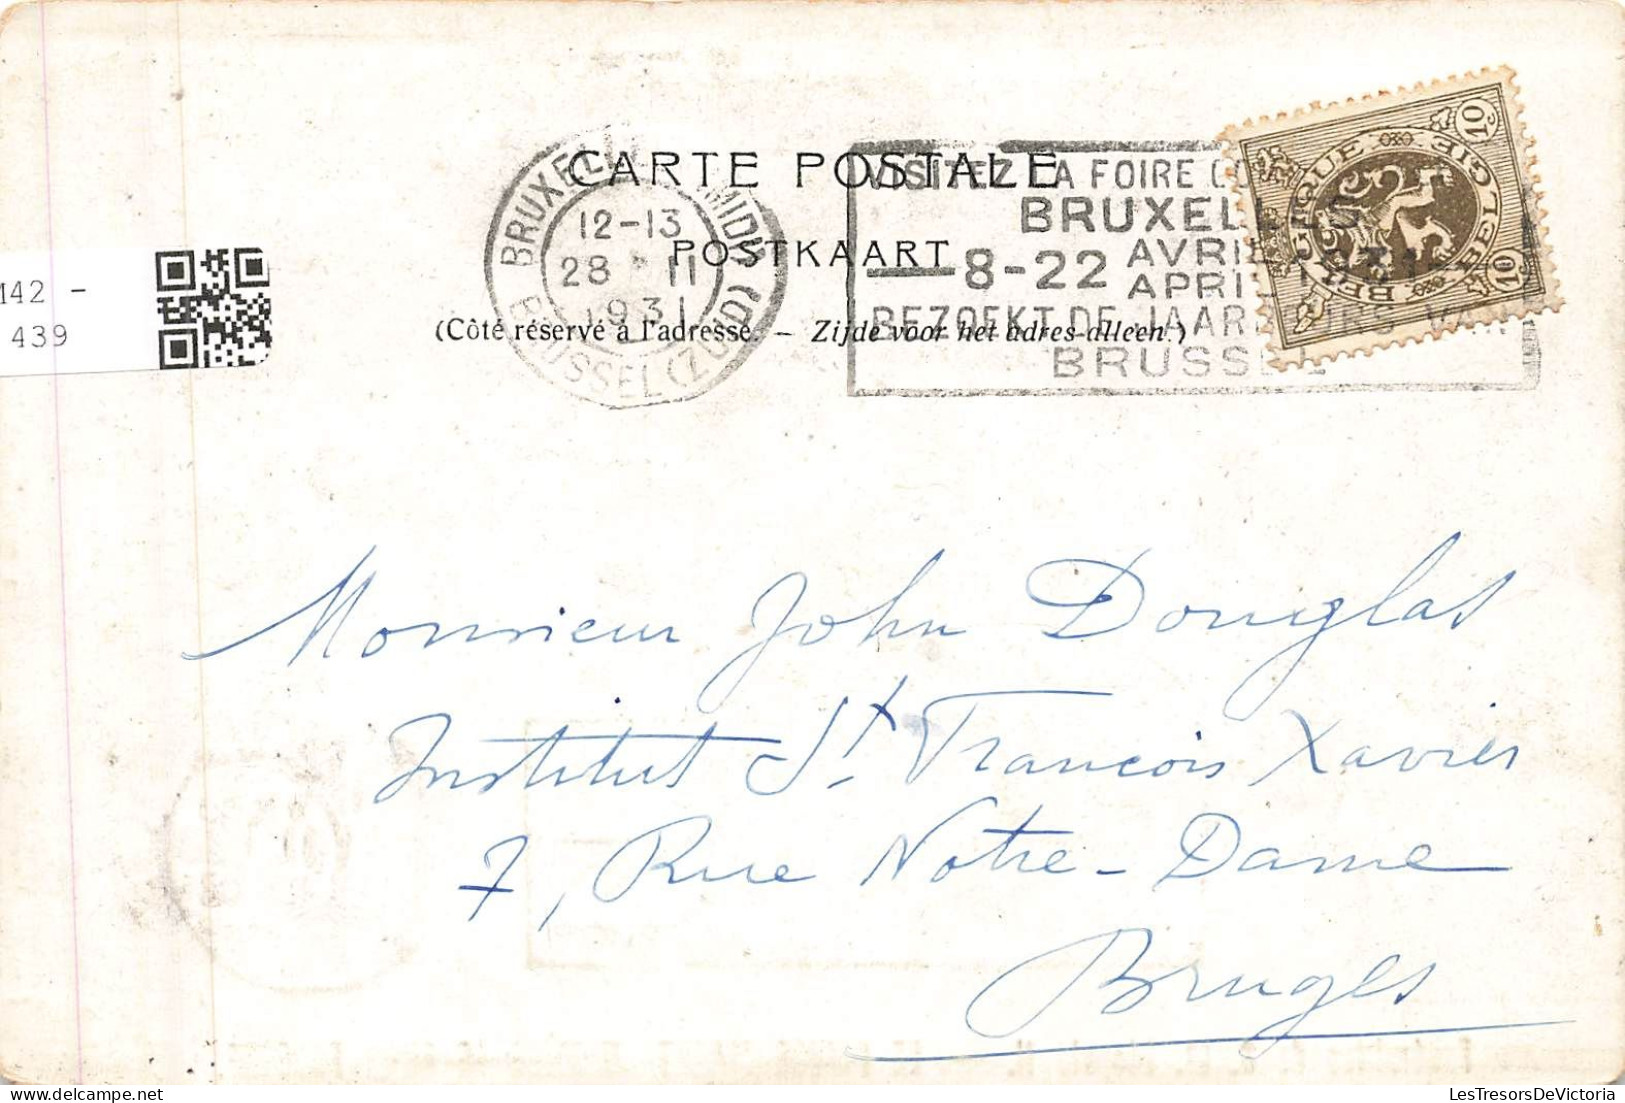 BELGIQUE - Bruxelles - Funérailles De SM Léopold II - Le Prince Albert Derrière Le Char Funèbre - Carte Postale Ancienne - Beroemde Personen